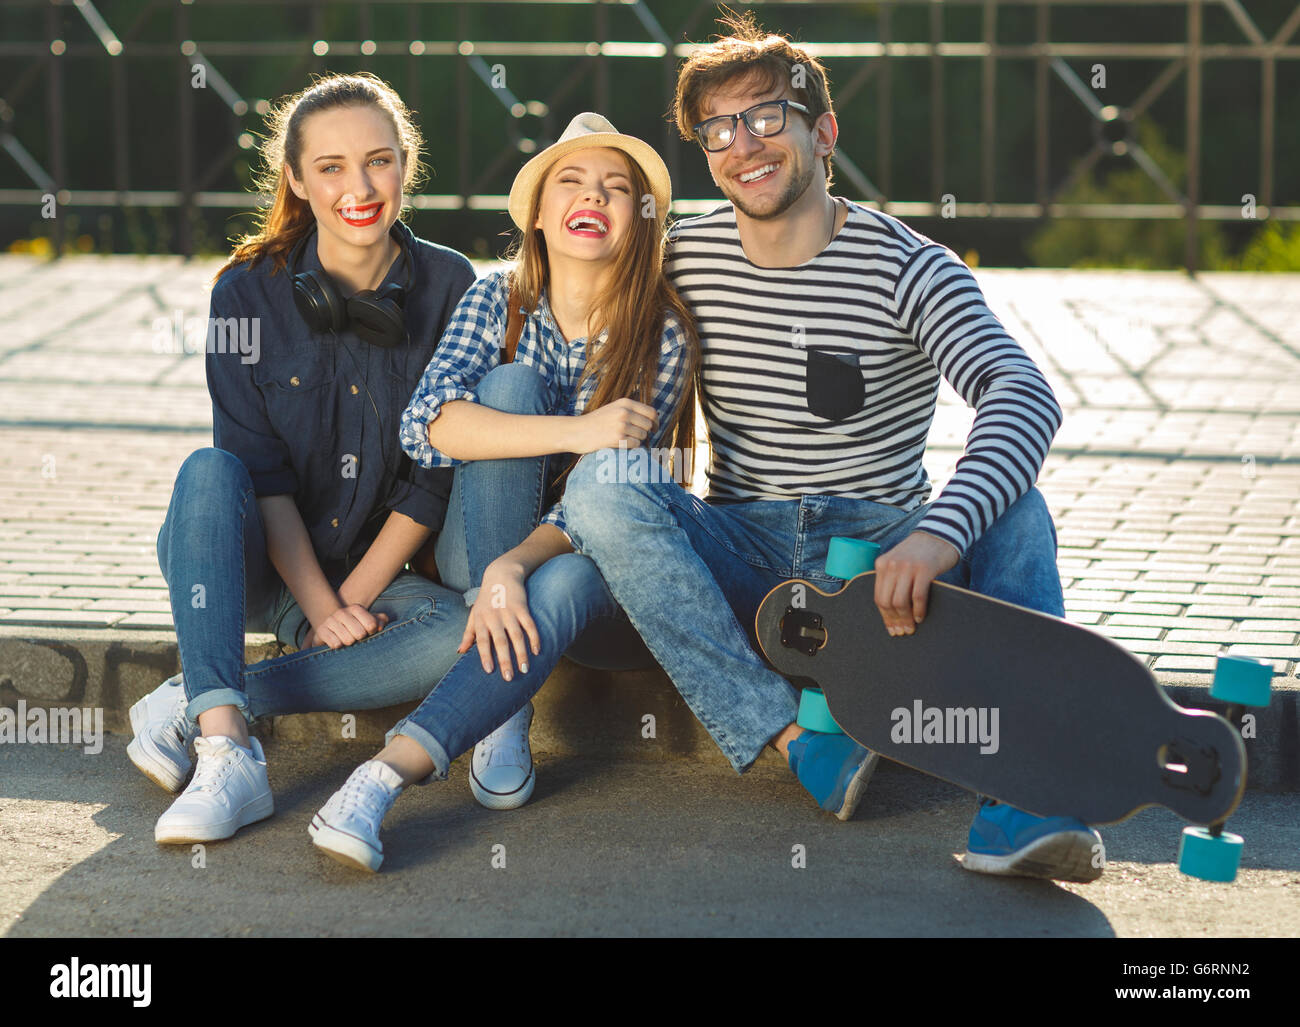 Amistad, ocio, verano, tecnología y personas concepto - sonriendo amigos divertirse al aire libre Foto de stock